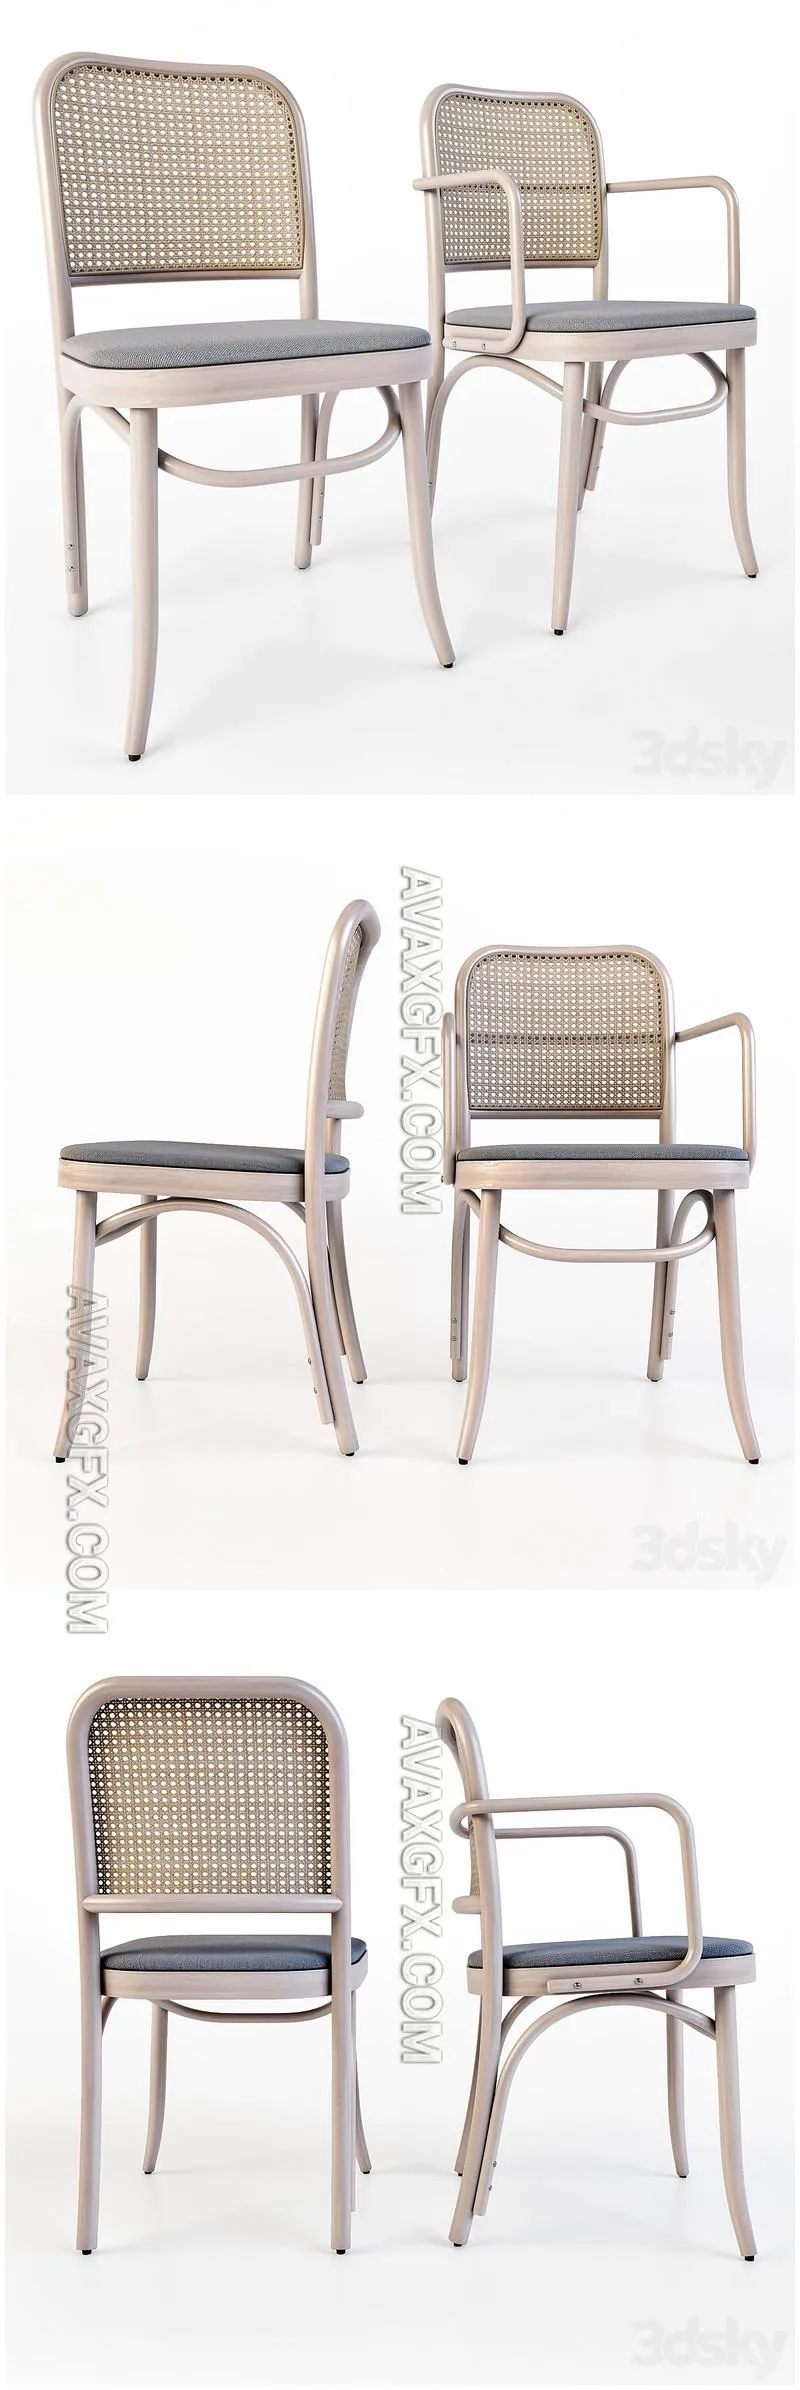 Chair_Baboen_6014_Palmira_Verges - 3D Model